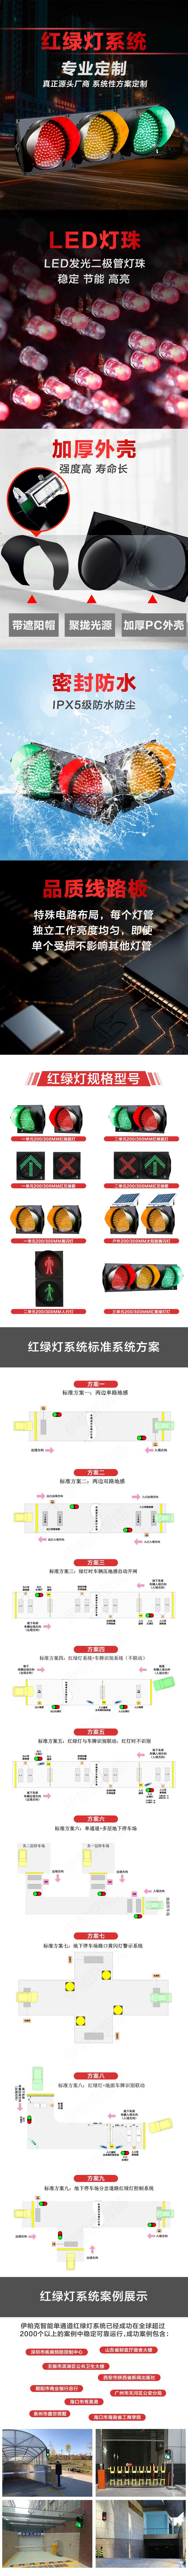 停車場紅綠燈智能引導系統